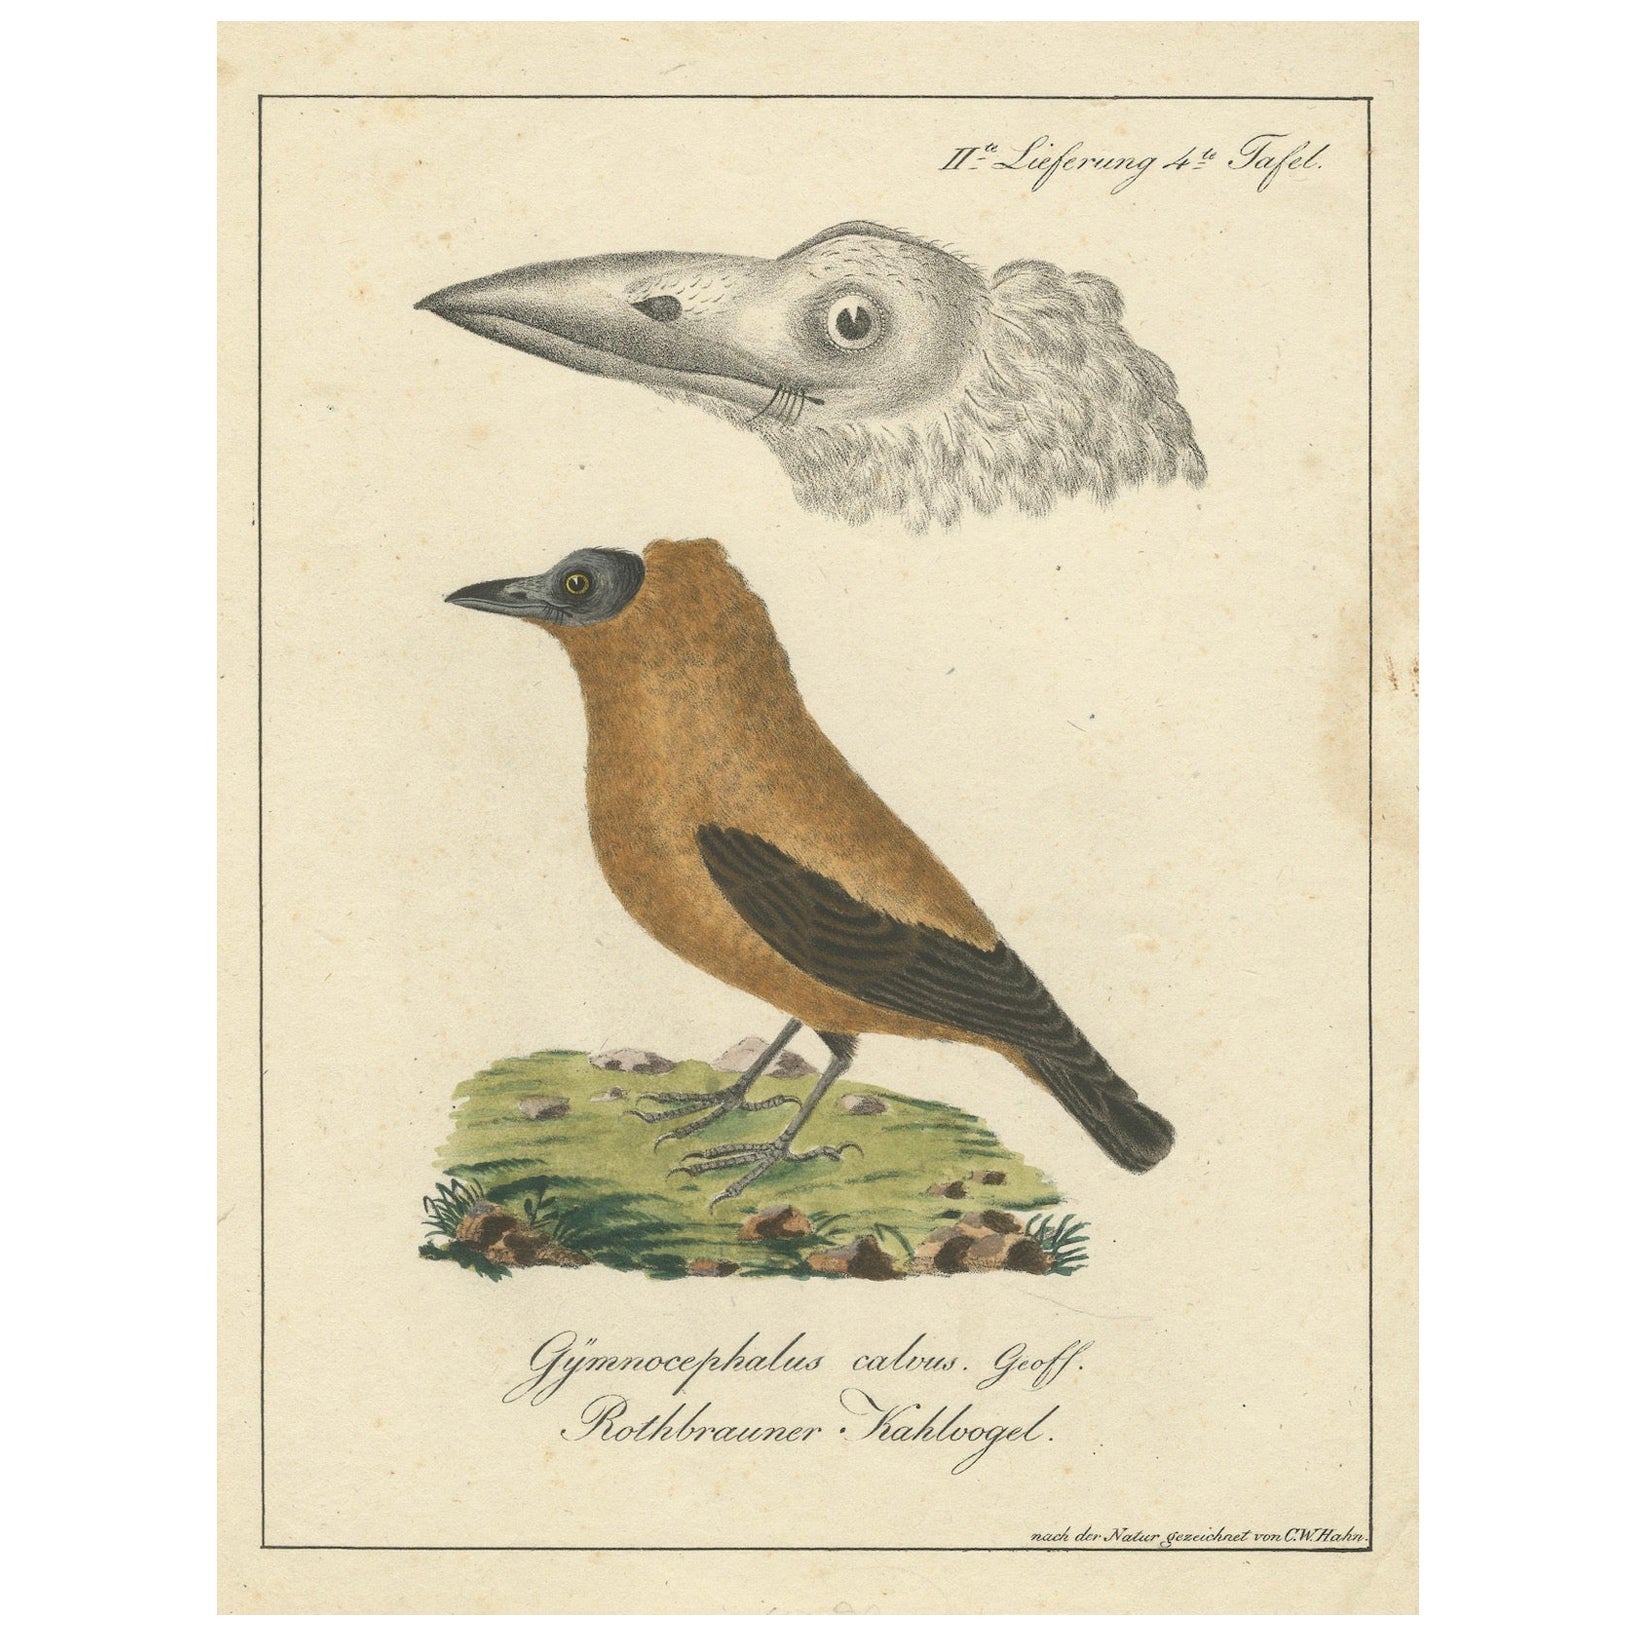 Elegante Fehlbezeichnung: The Rusty-Brown Bird of Hahn's Legacy, um 1820